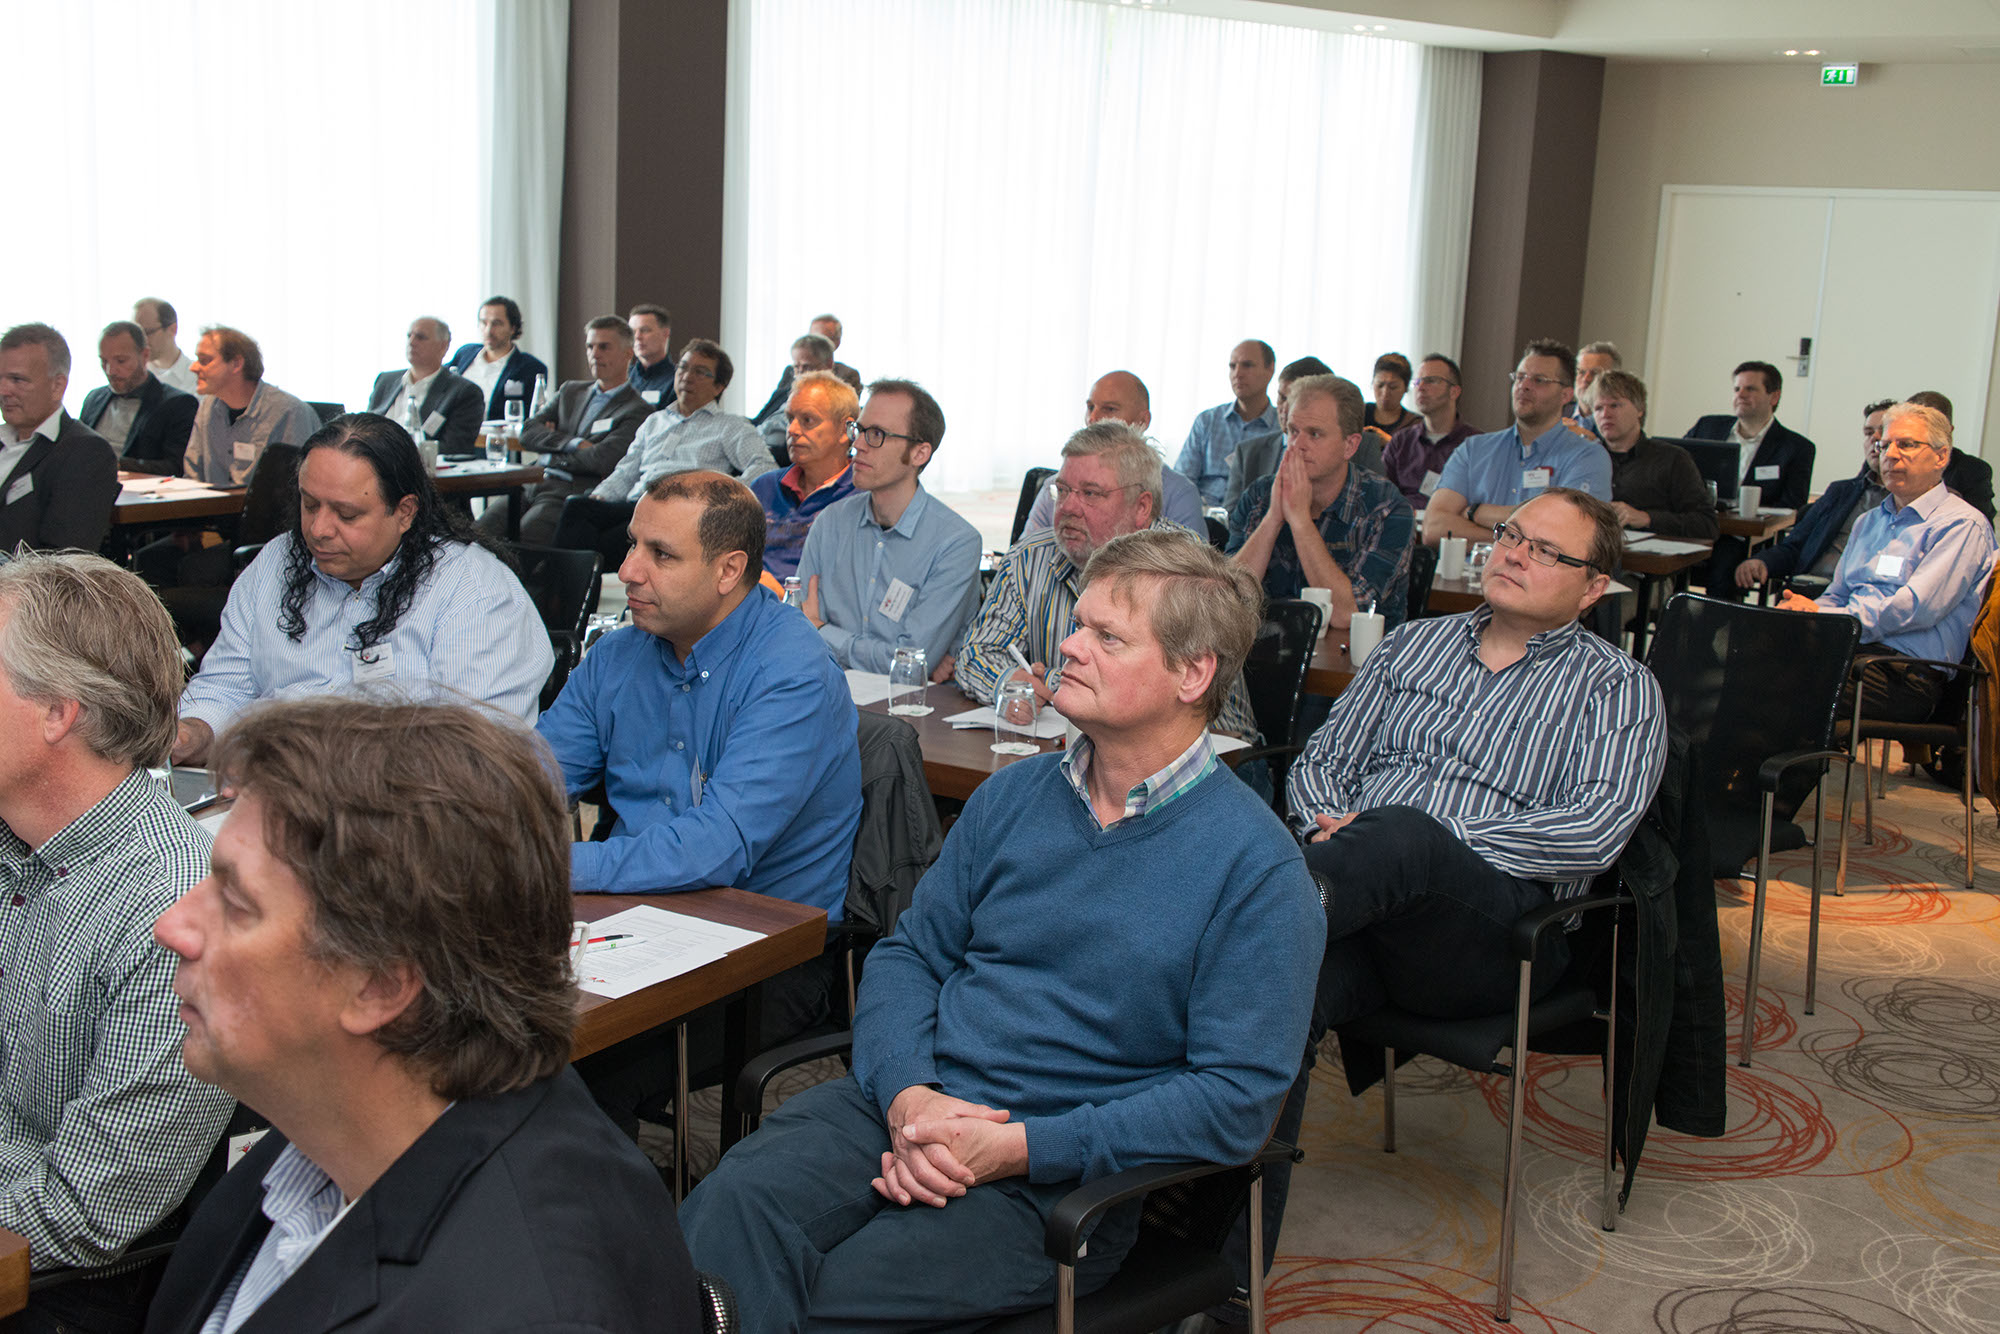 Uniface gebruikers bijeenkomst voorjaar 2015 Amsterdam